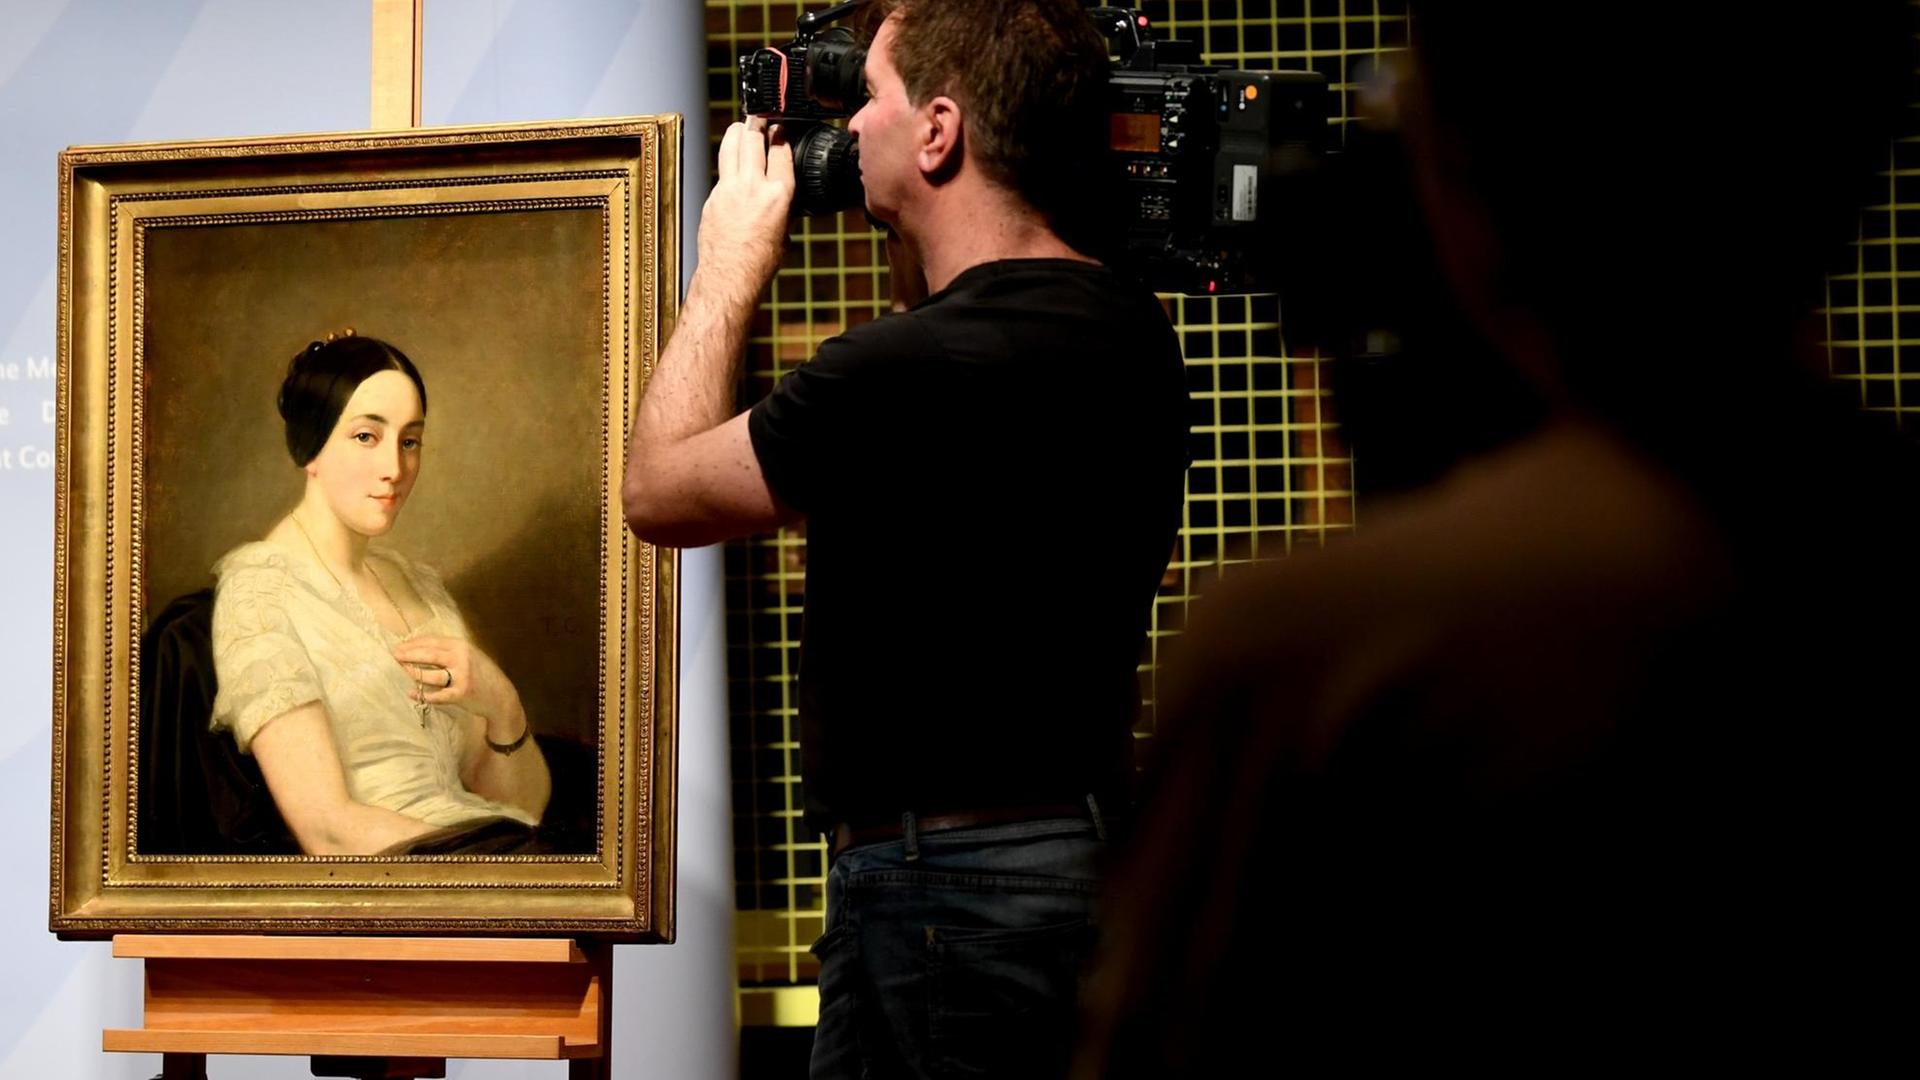 Journalisten filmen das Bild "Portrait einer sitzenden jungen Frau / Portrait de jeune femme assise" des Künstlers Thomas Couture. Das Gemälde aus dem Kunstfund Gurlitt, wurde NS-Raubkunst identifiziert und an die Nachkommen zurückgegeben.